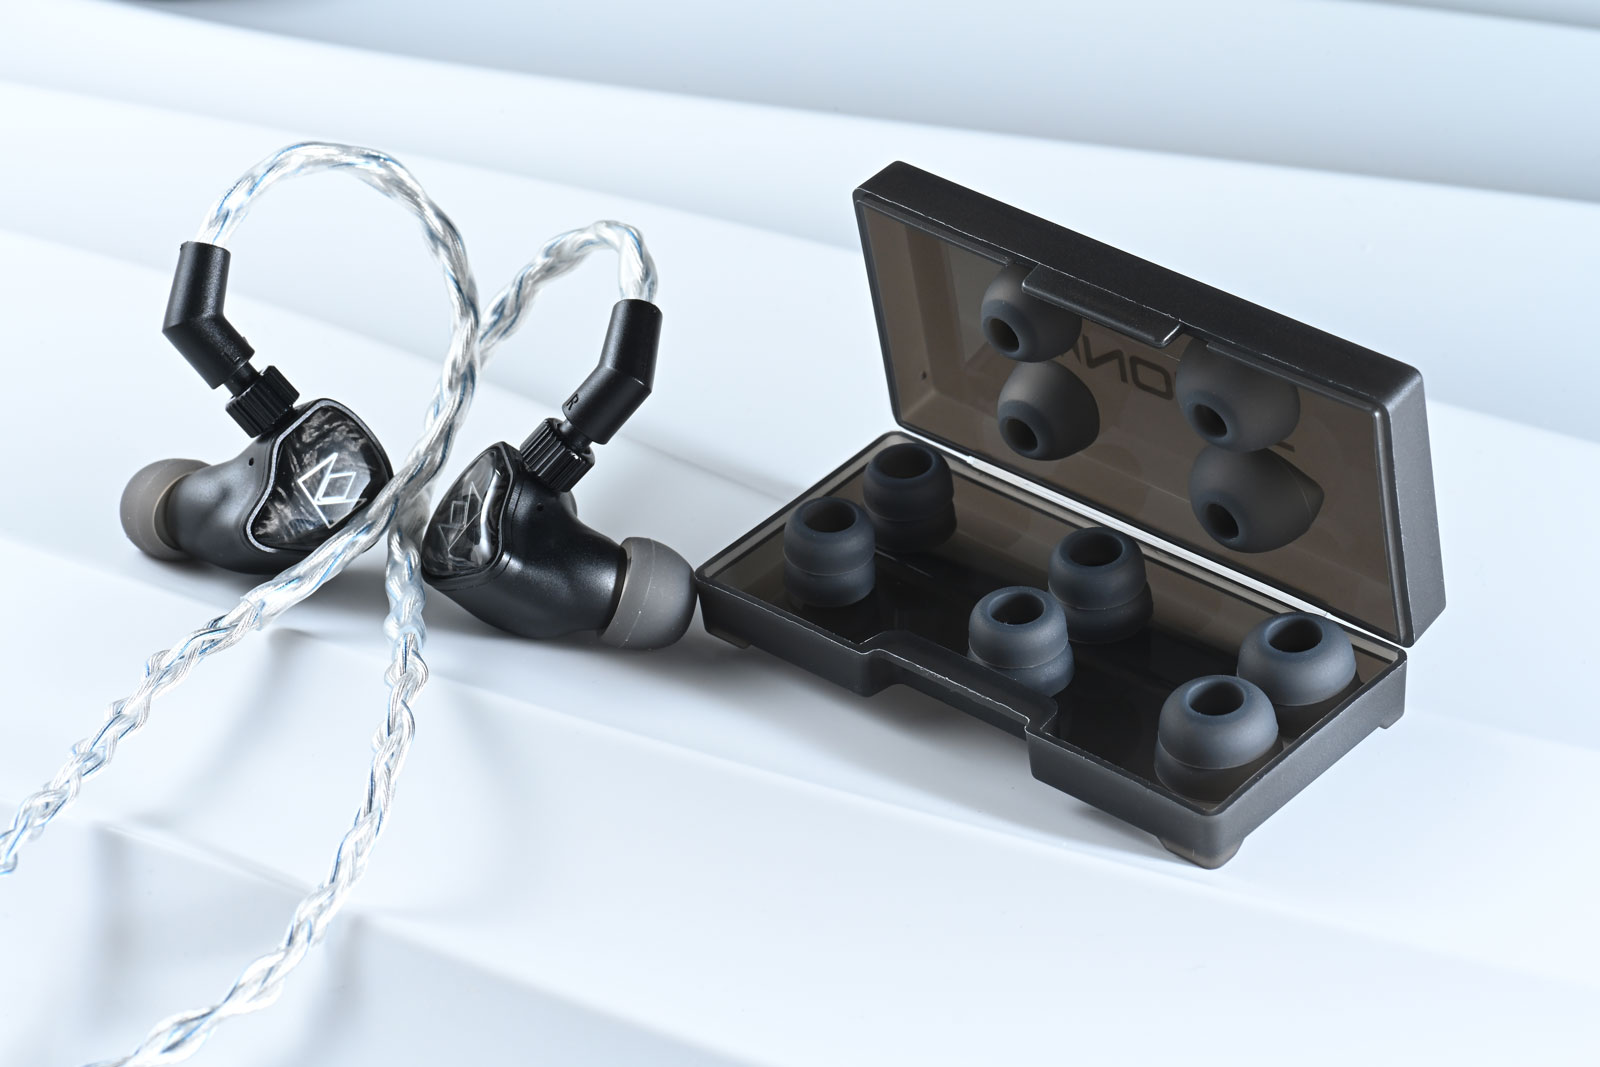 由聽力學博士 Dr. John 創辦的耳機品牌 Noble Audio，每款出品都各具特色，且有明確的目標群眾。像最新推出，首次選用全球最細小 xMEMS 單元型號 Cowell 的 IEM 耳機 XM-1，便專為追求便攜同時高音質的用家而設。採用了 USB-C 端子，且不用額外接駁 USB DAC 便可直駁手機聽歌，十分方便，而且聲音表現也有讓人一聽難忘的地方。